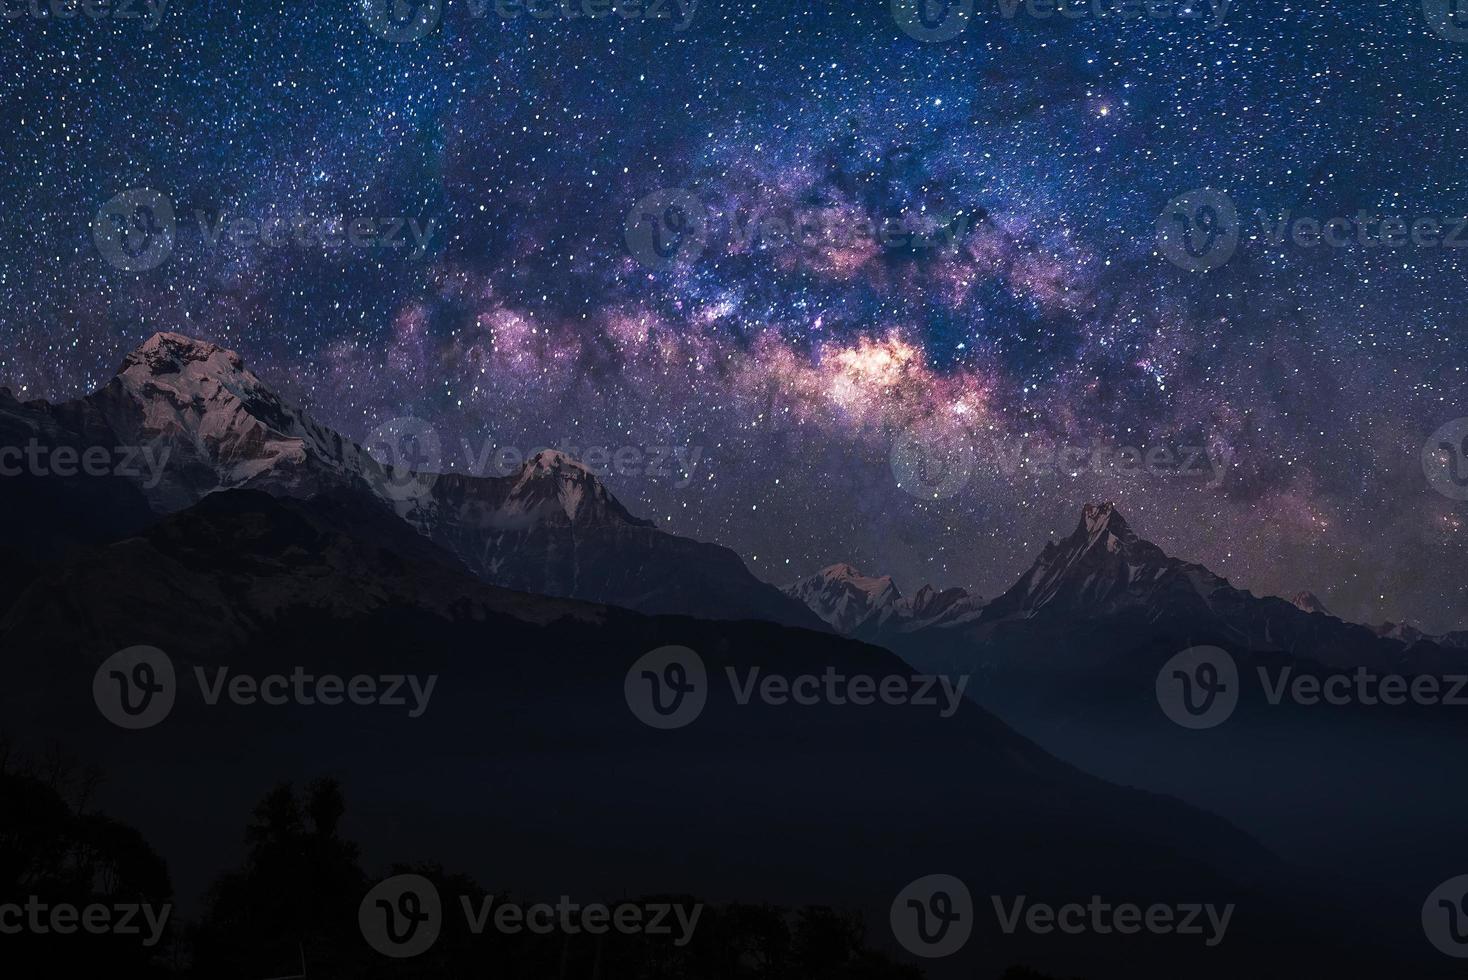 vue paysage naturel de la chaîne de montagnes himalayenne avec espace universel de la voie lactée et étoiles sur le ciel nocturne photo